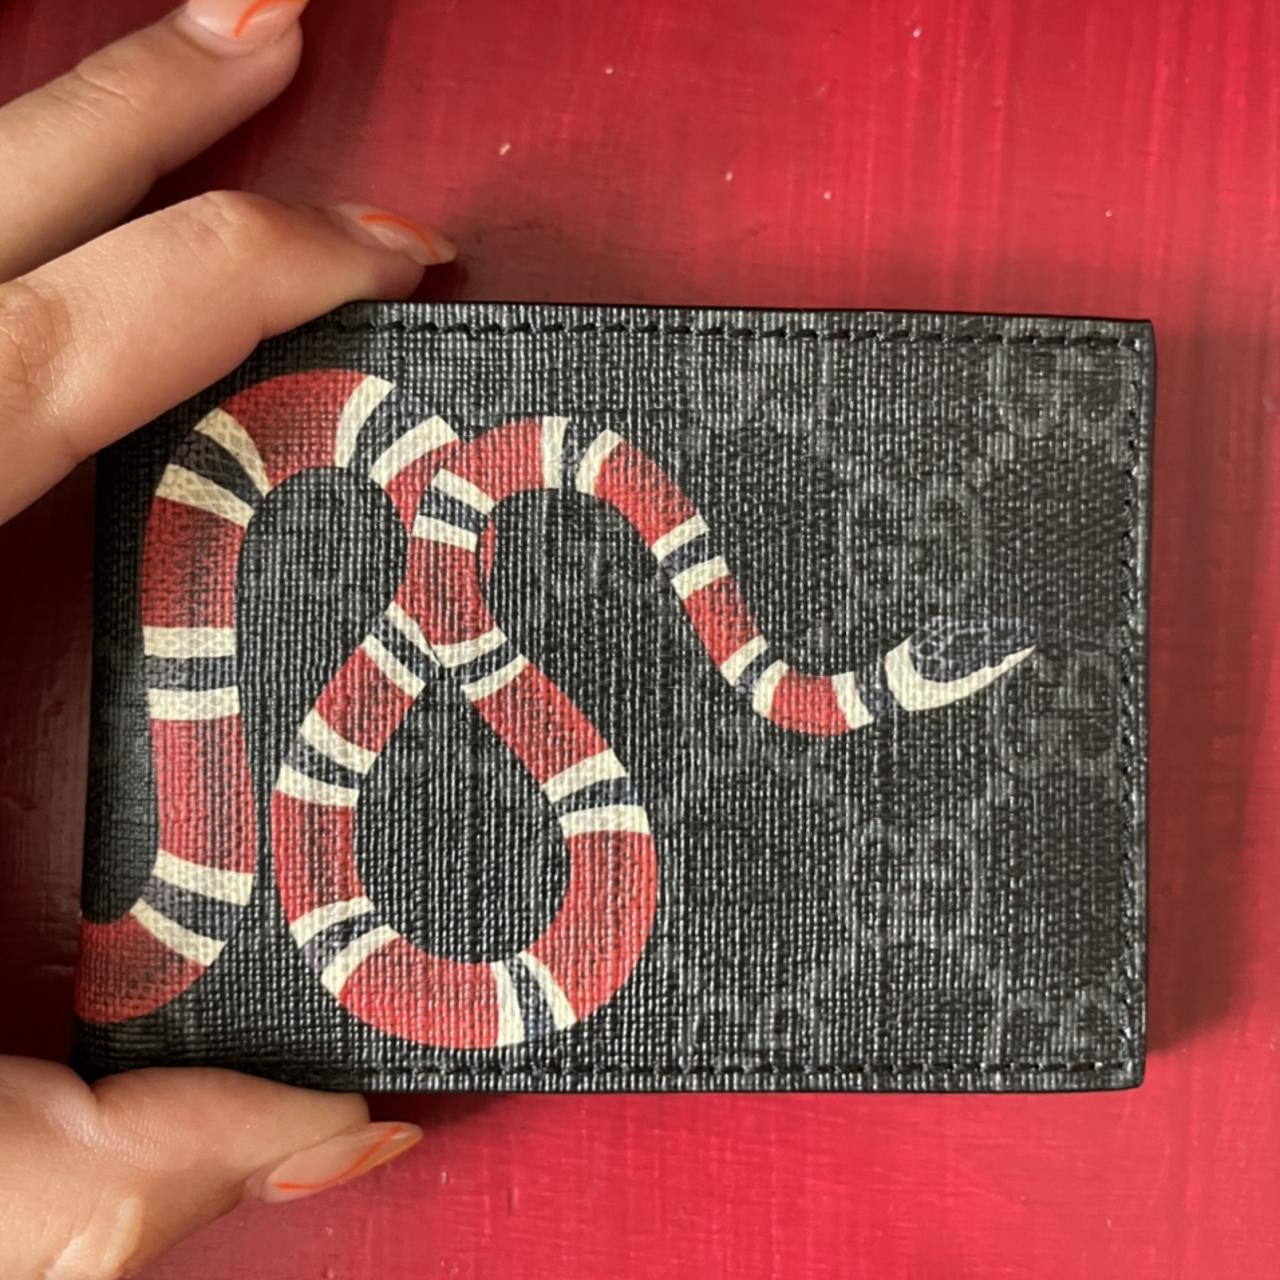 Vintage Gucci snake skin wallet #gucci #wallet - Depop